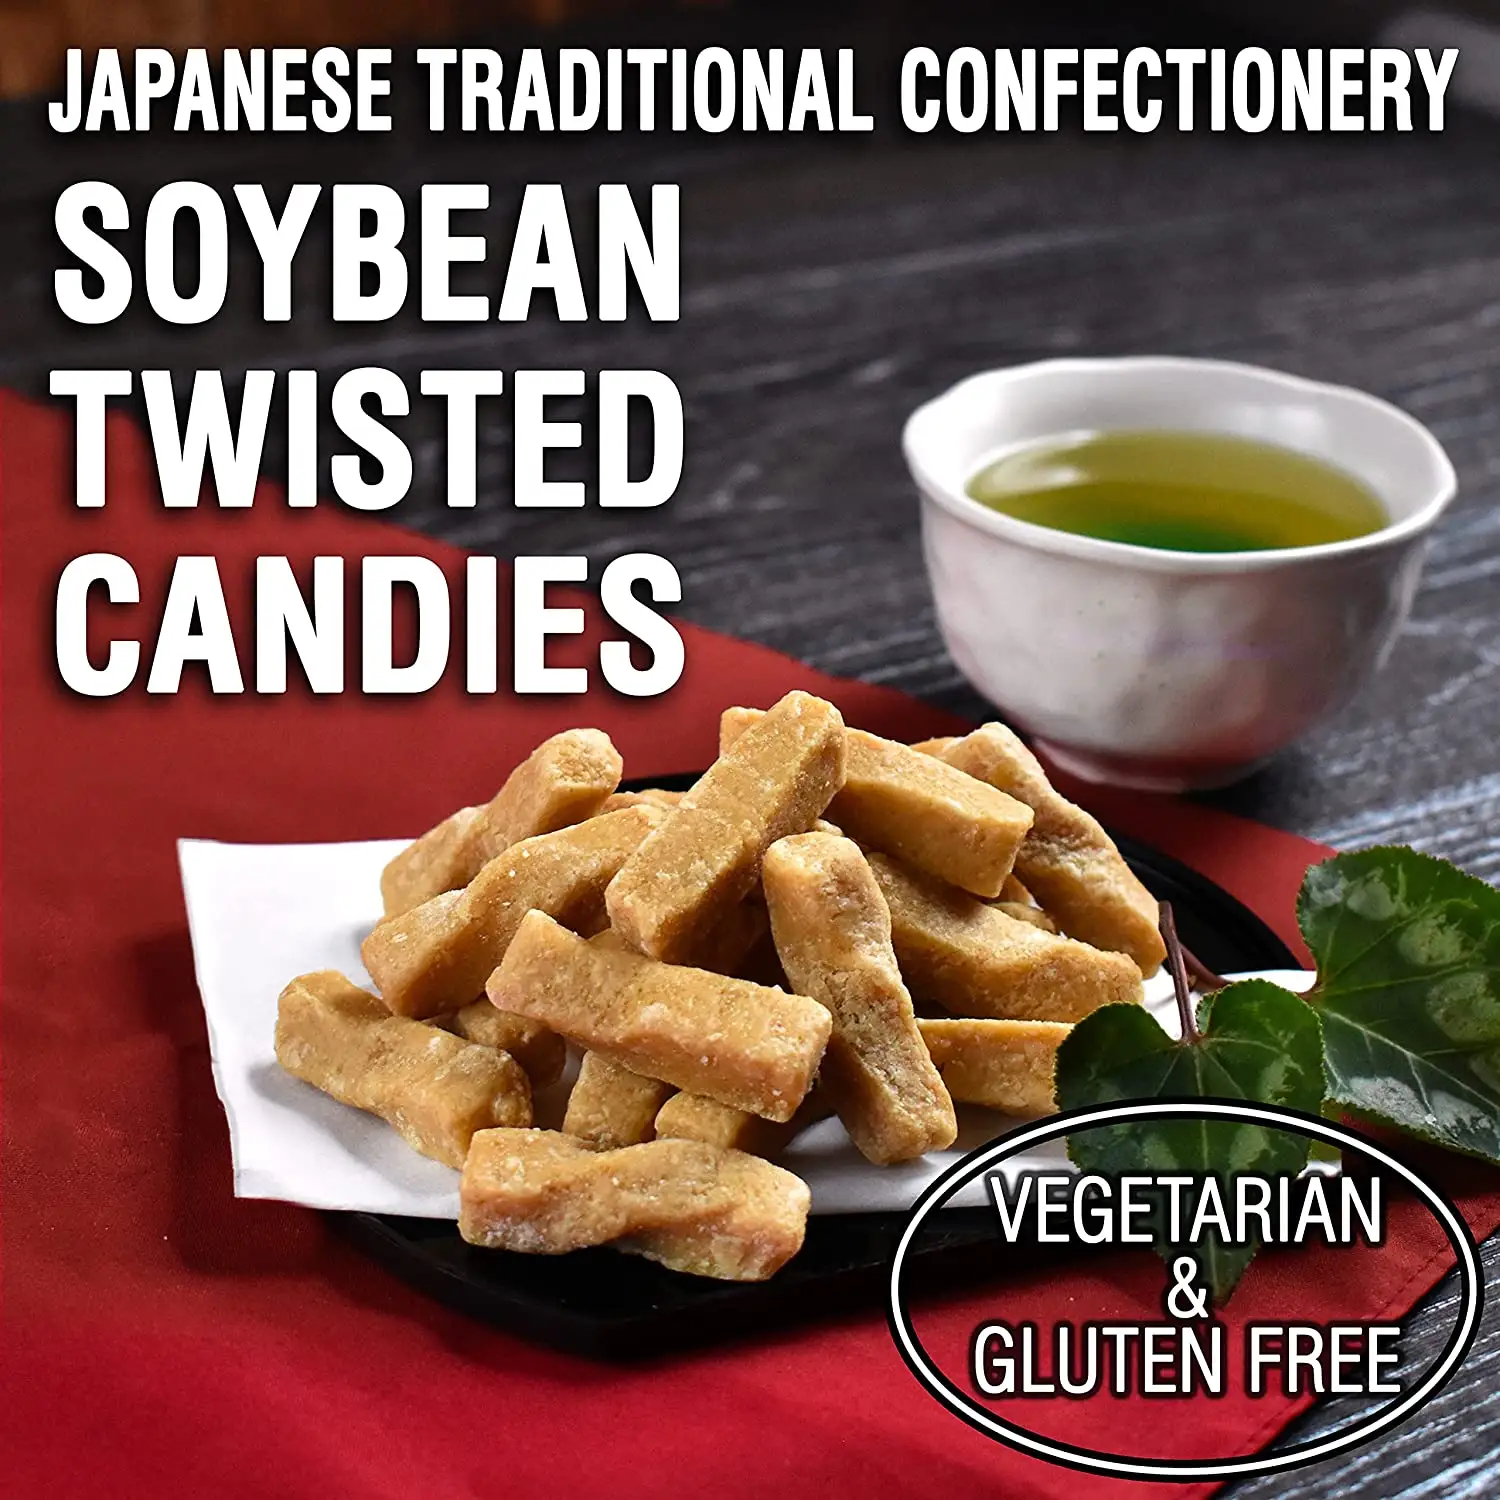 Snack giapponesi-Kinako Mochi Twisted caramelle tradizionali giapponesi-fatte a mano, senza additivo, con semi di soia Hokkaido